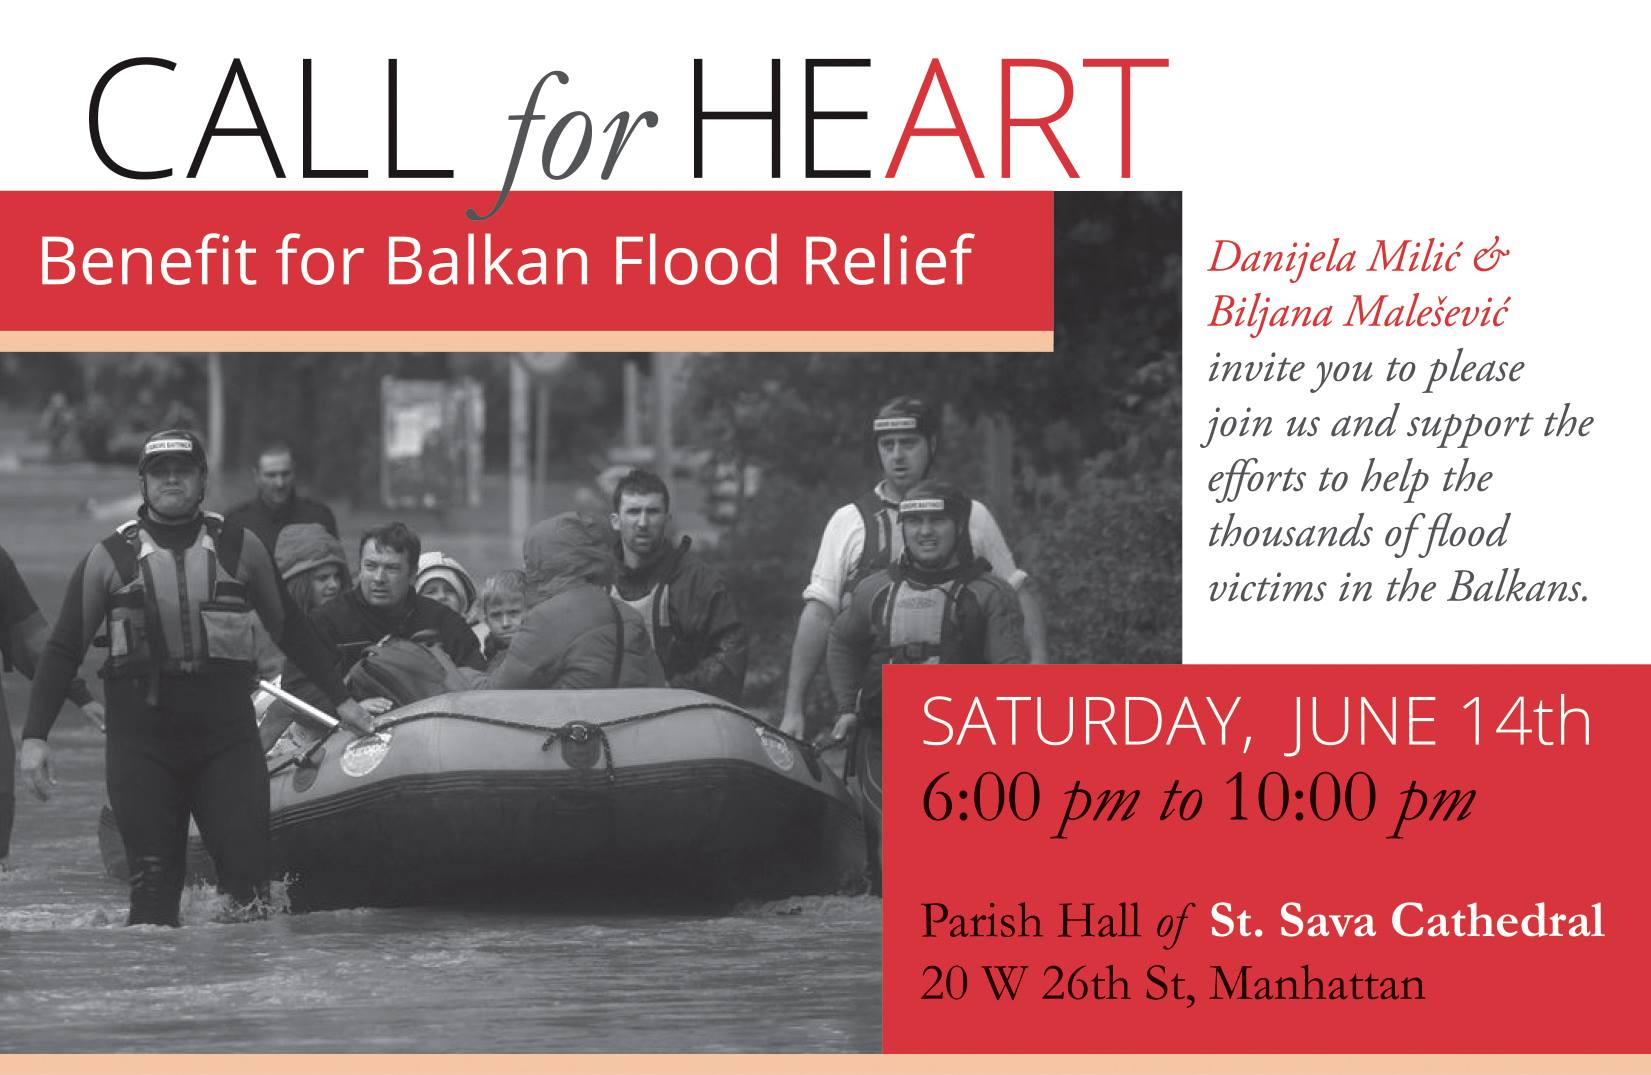 Културно вече за помоћ угроженима од поплаве – Субота, 14. јун, Сала цркве Светог Саве